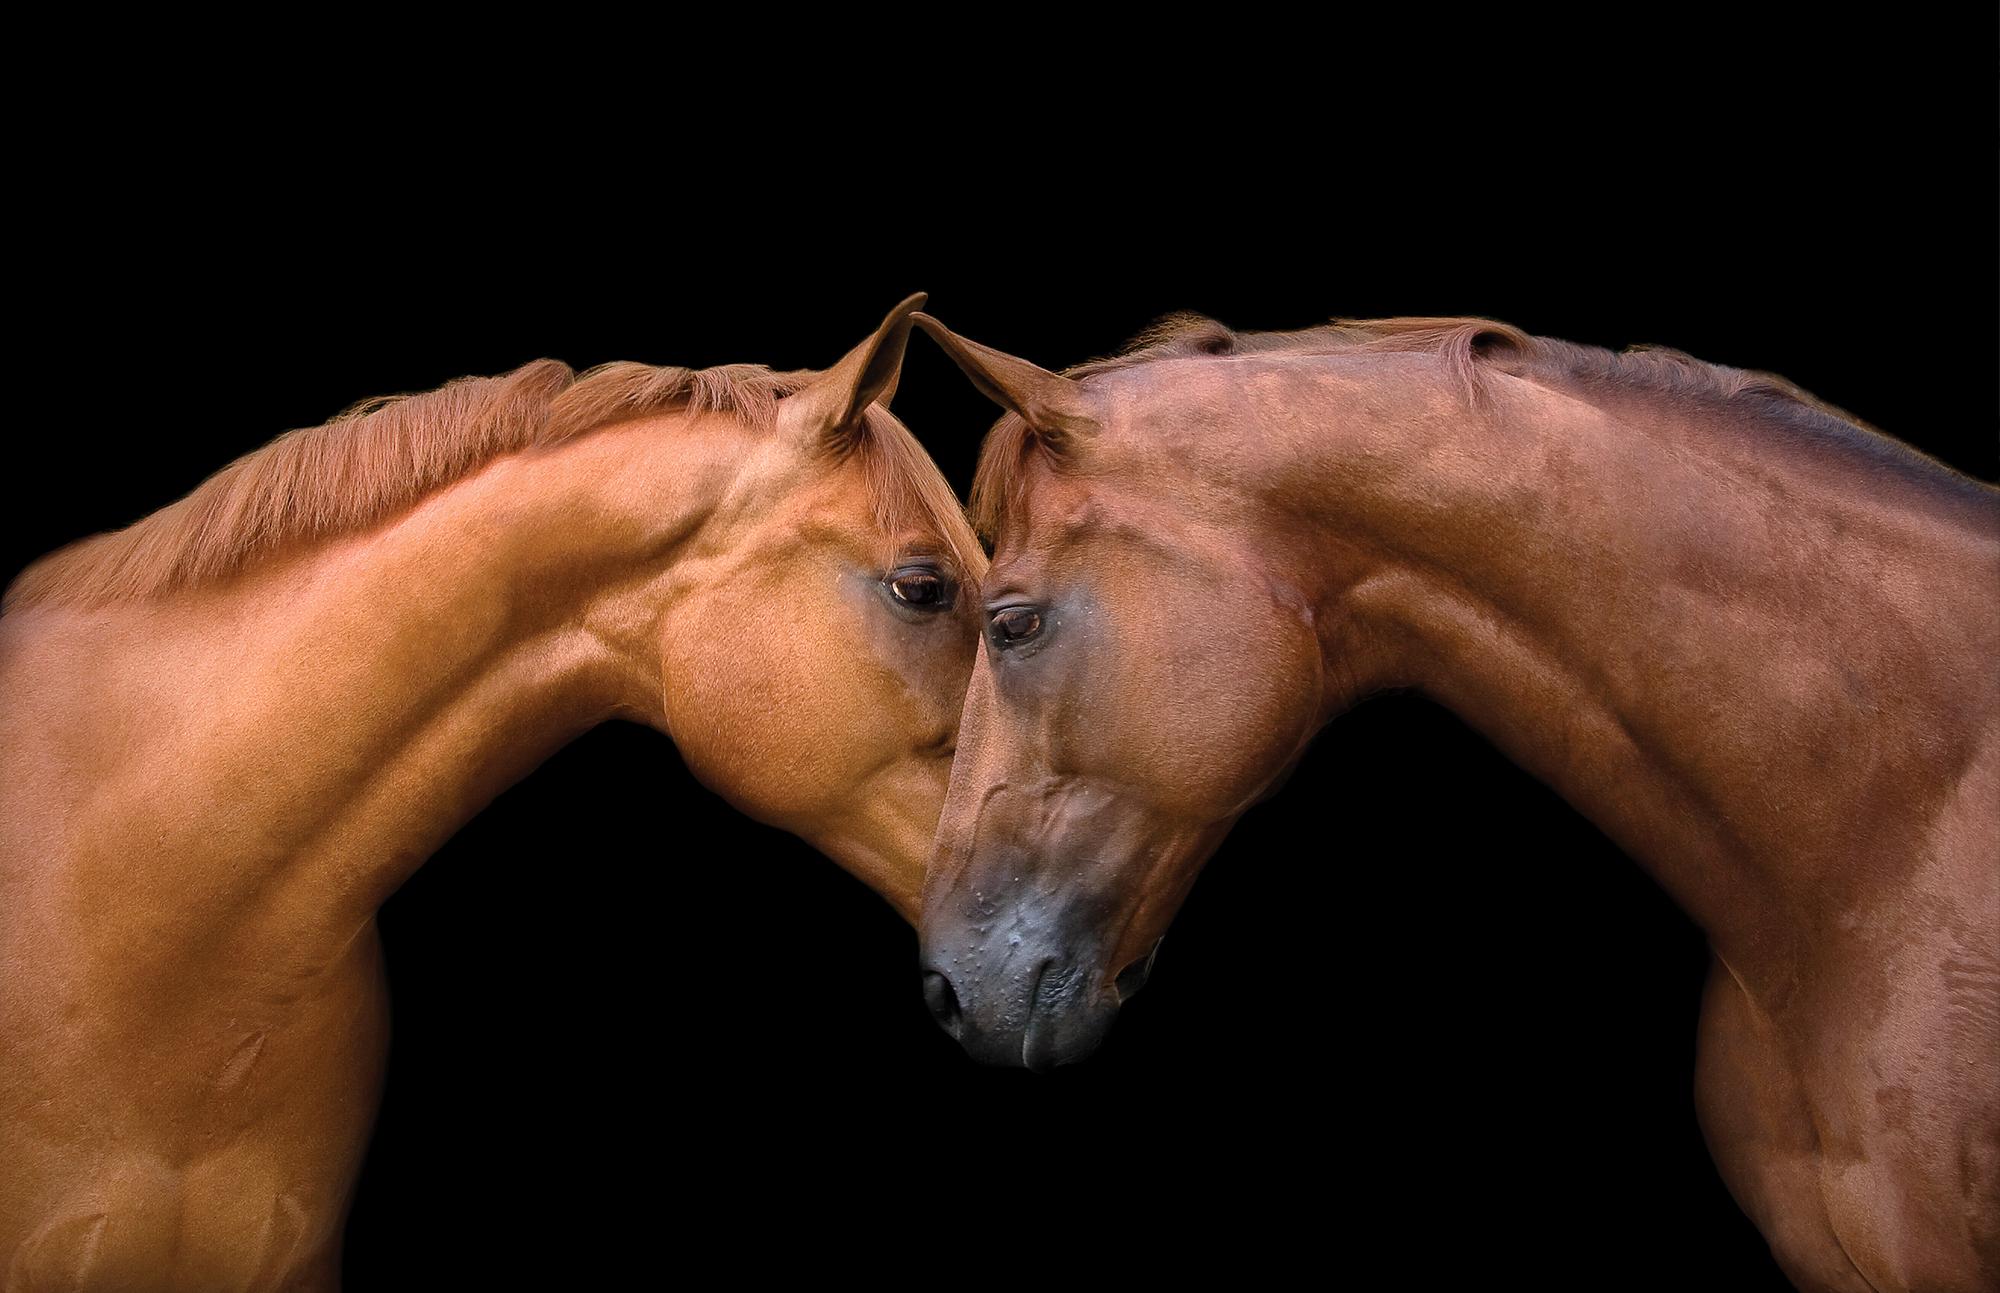 Figurative Photograph Bob Tabor - Édition de « Kissing Horses » (Les chevaux qui baignent)